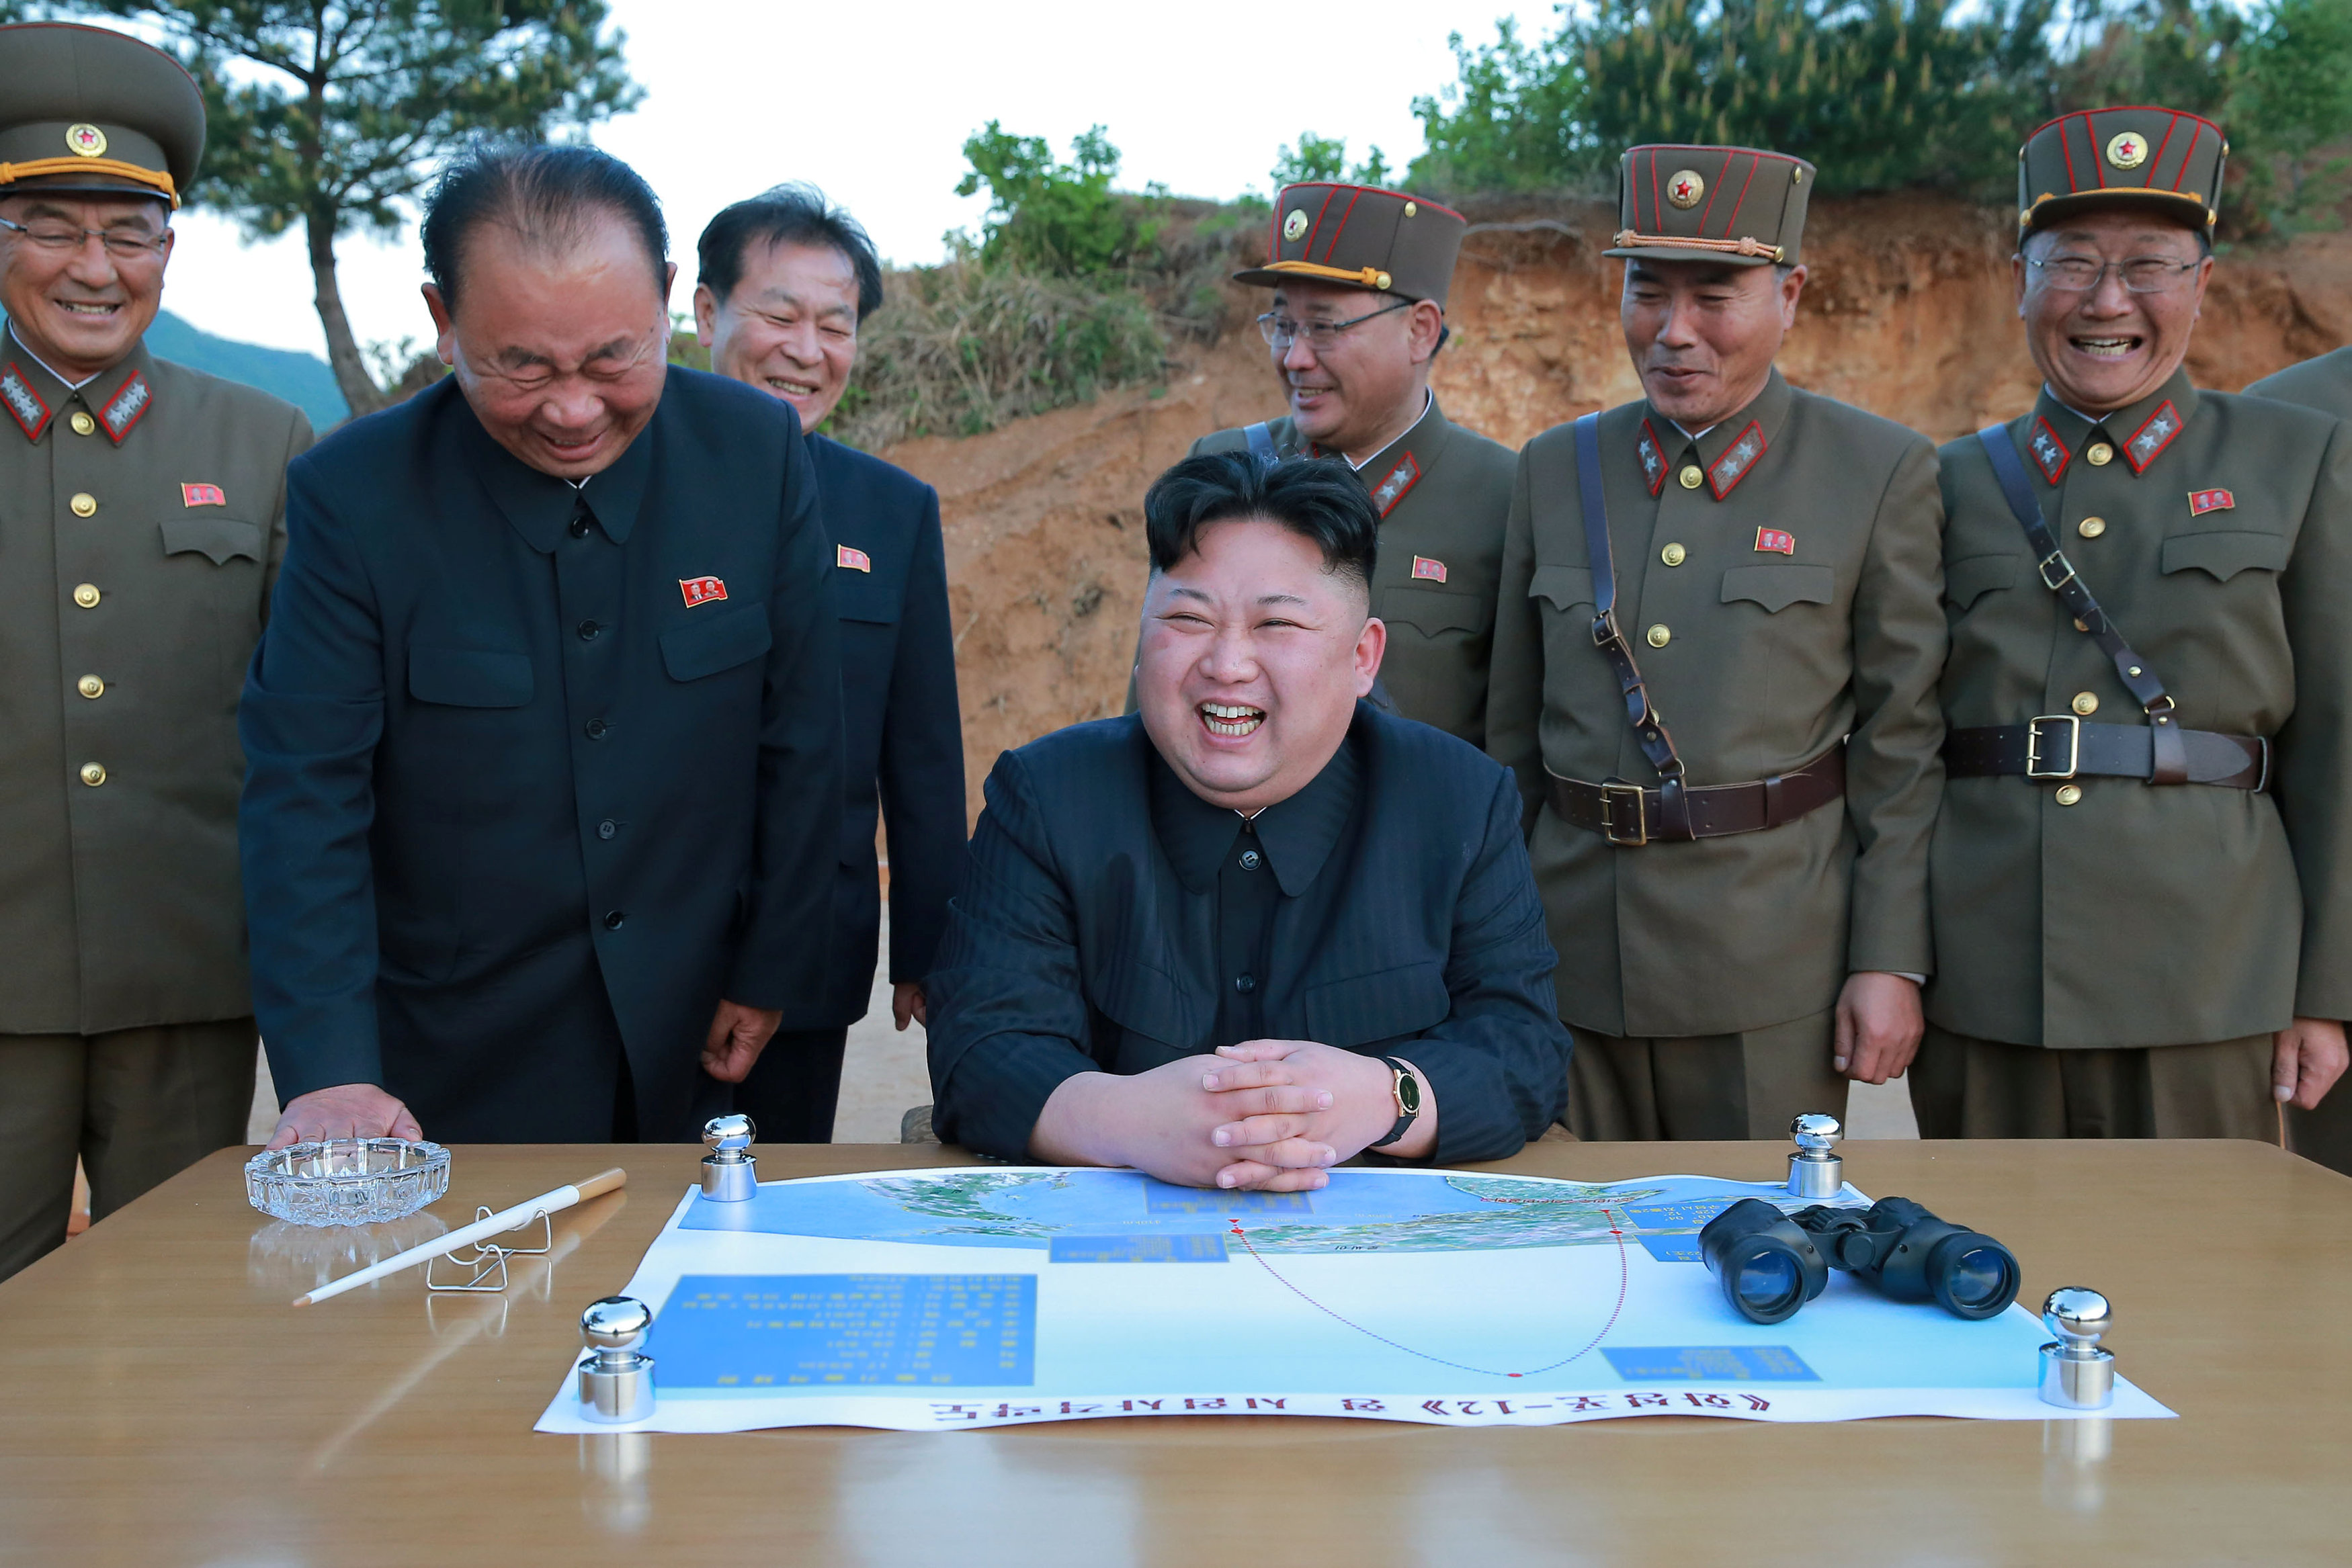 زعيم كوريا الشمالية يستطلع الخريطة قبل التجربة الصاروخية